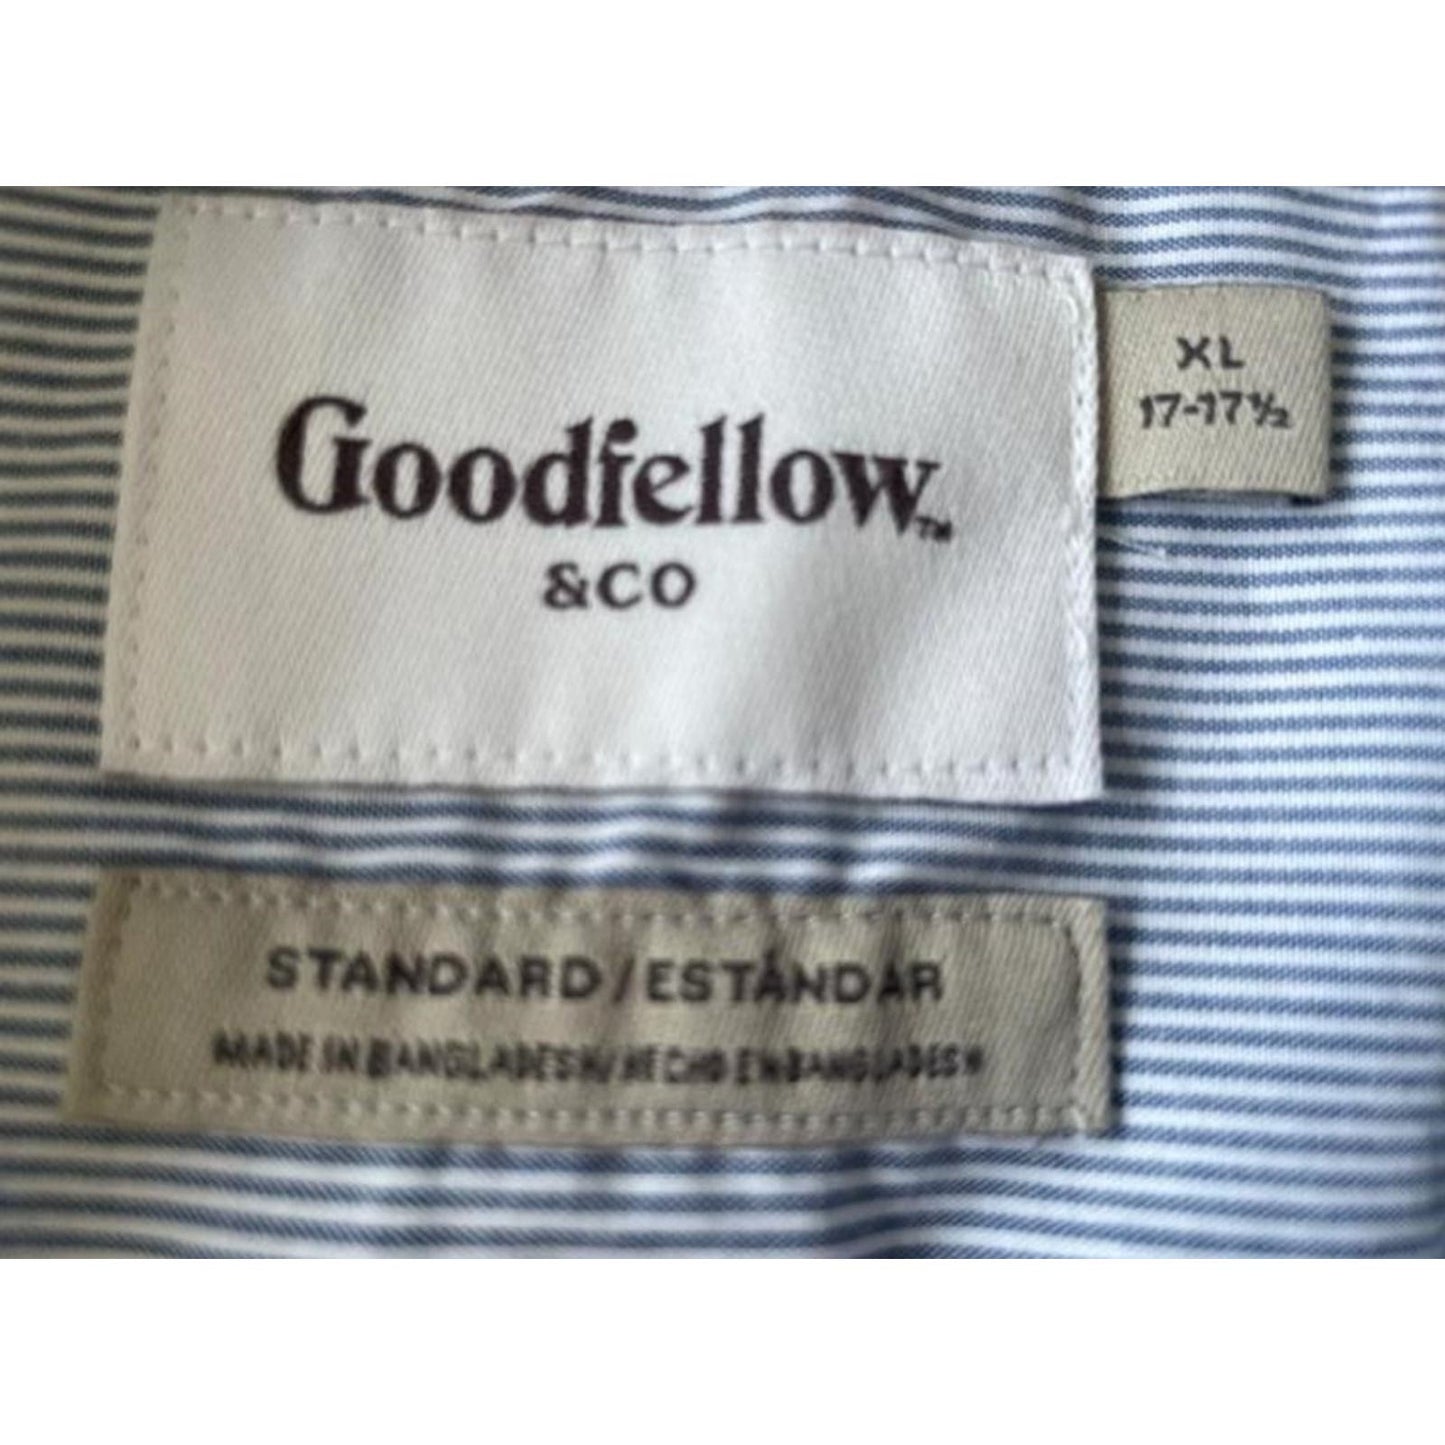 Goodfellow & Co. Long Sleeved Striped Shirt, XL 17